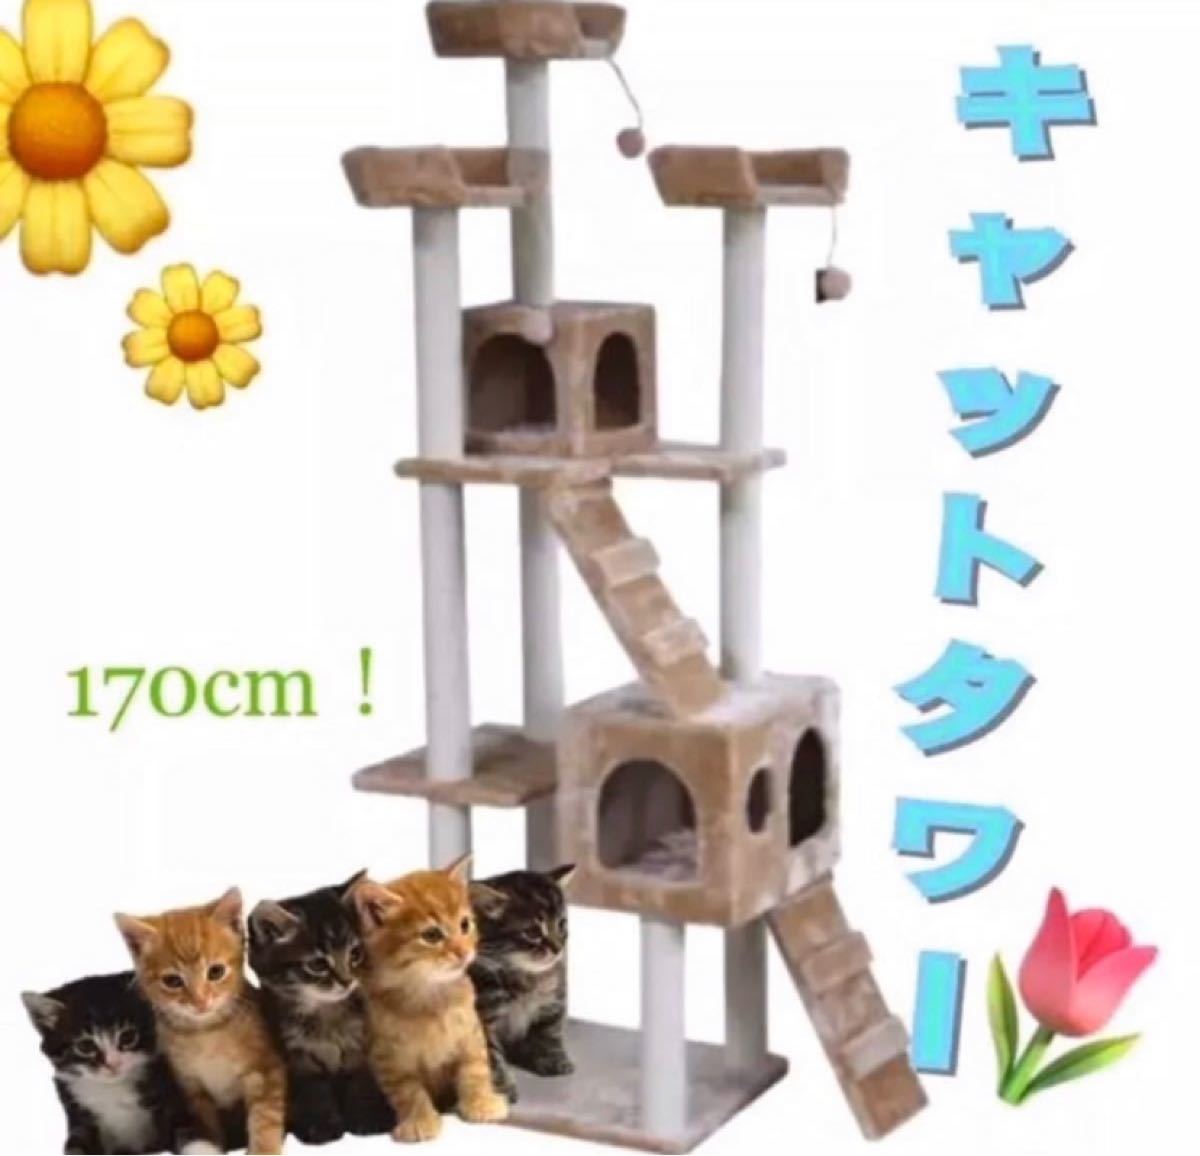  キャットタワー 猫タワー ワイド170cm ファニチャー 置き型 新品ベージュ